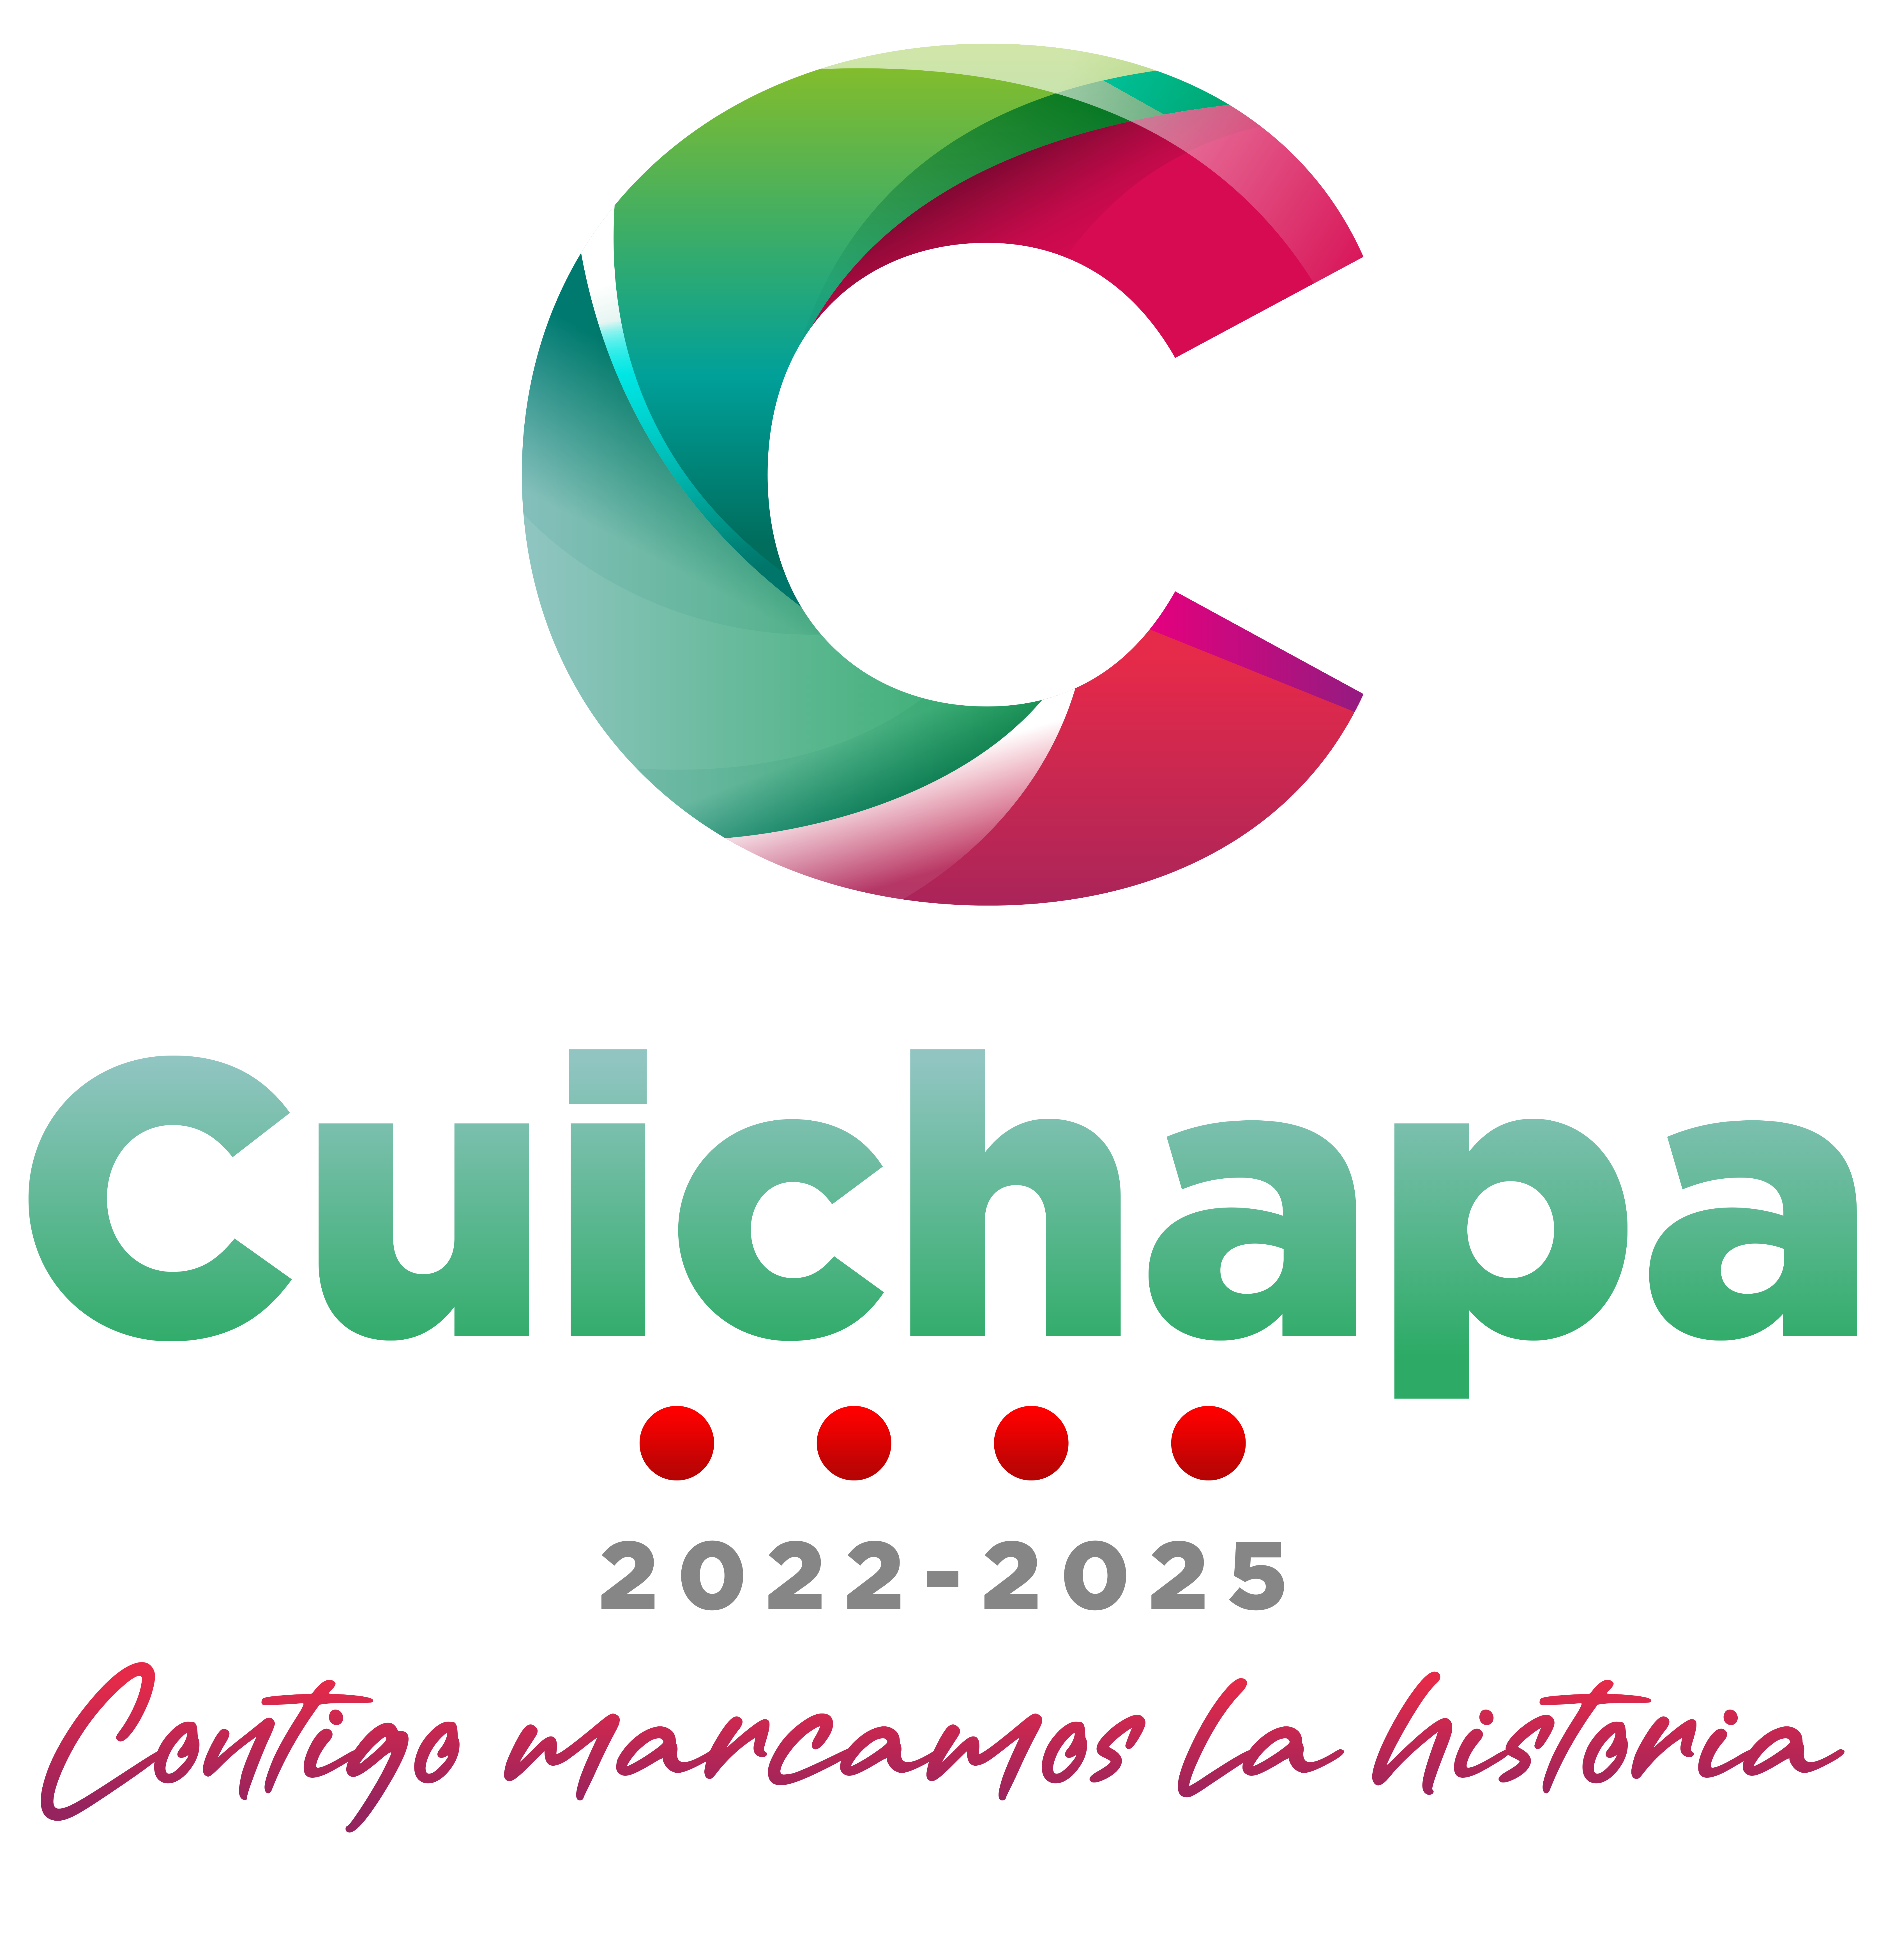 Ayuntamiento de Cuichapa